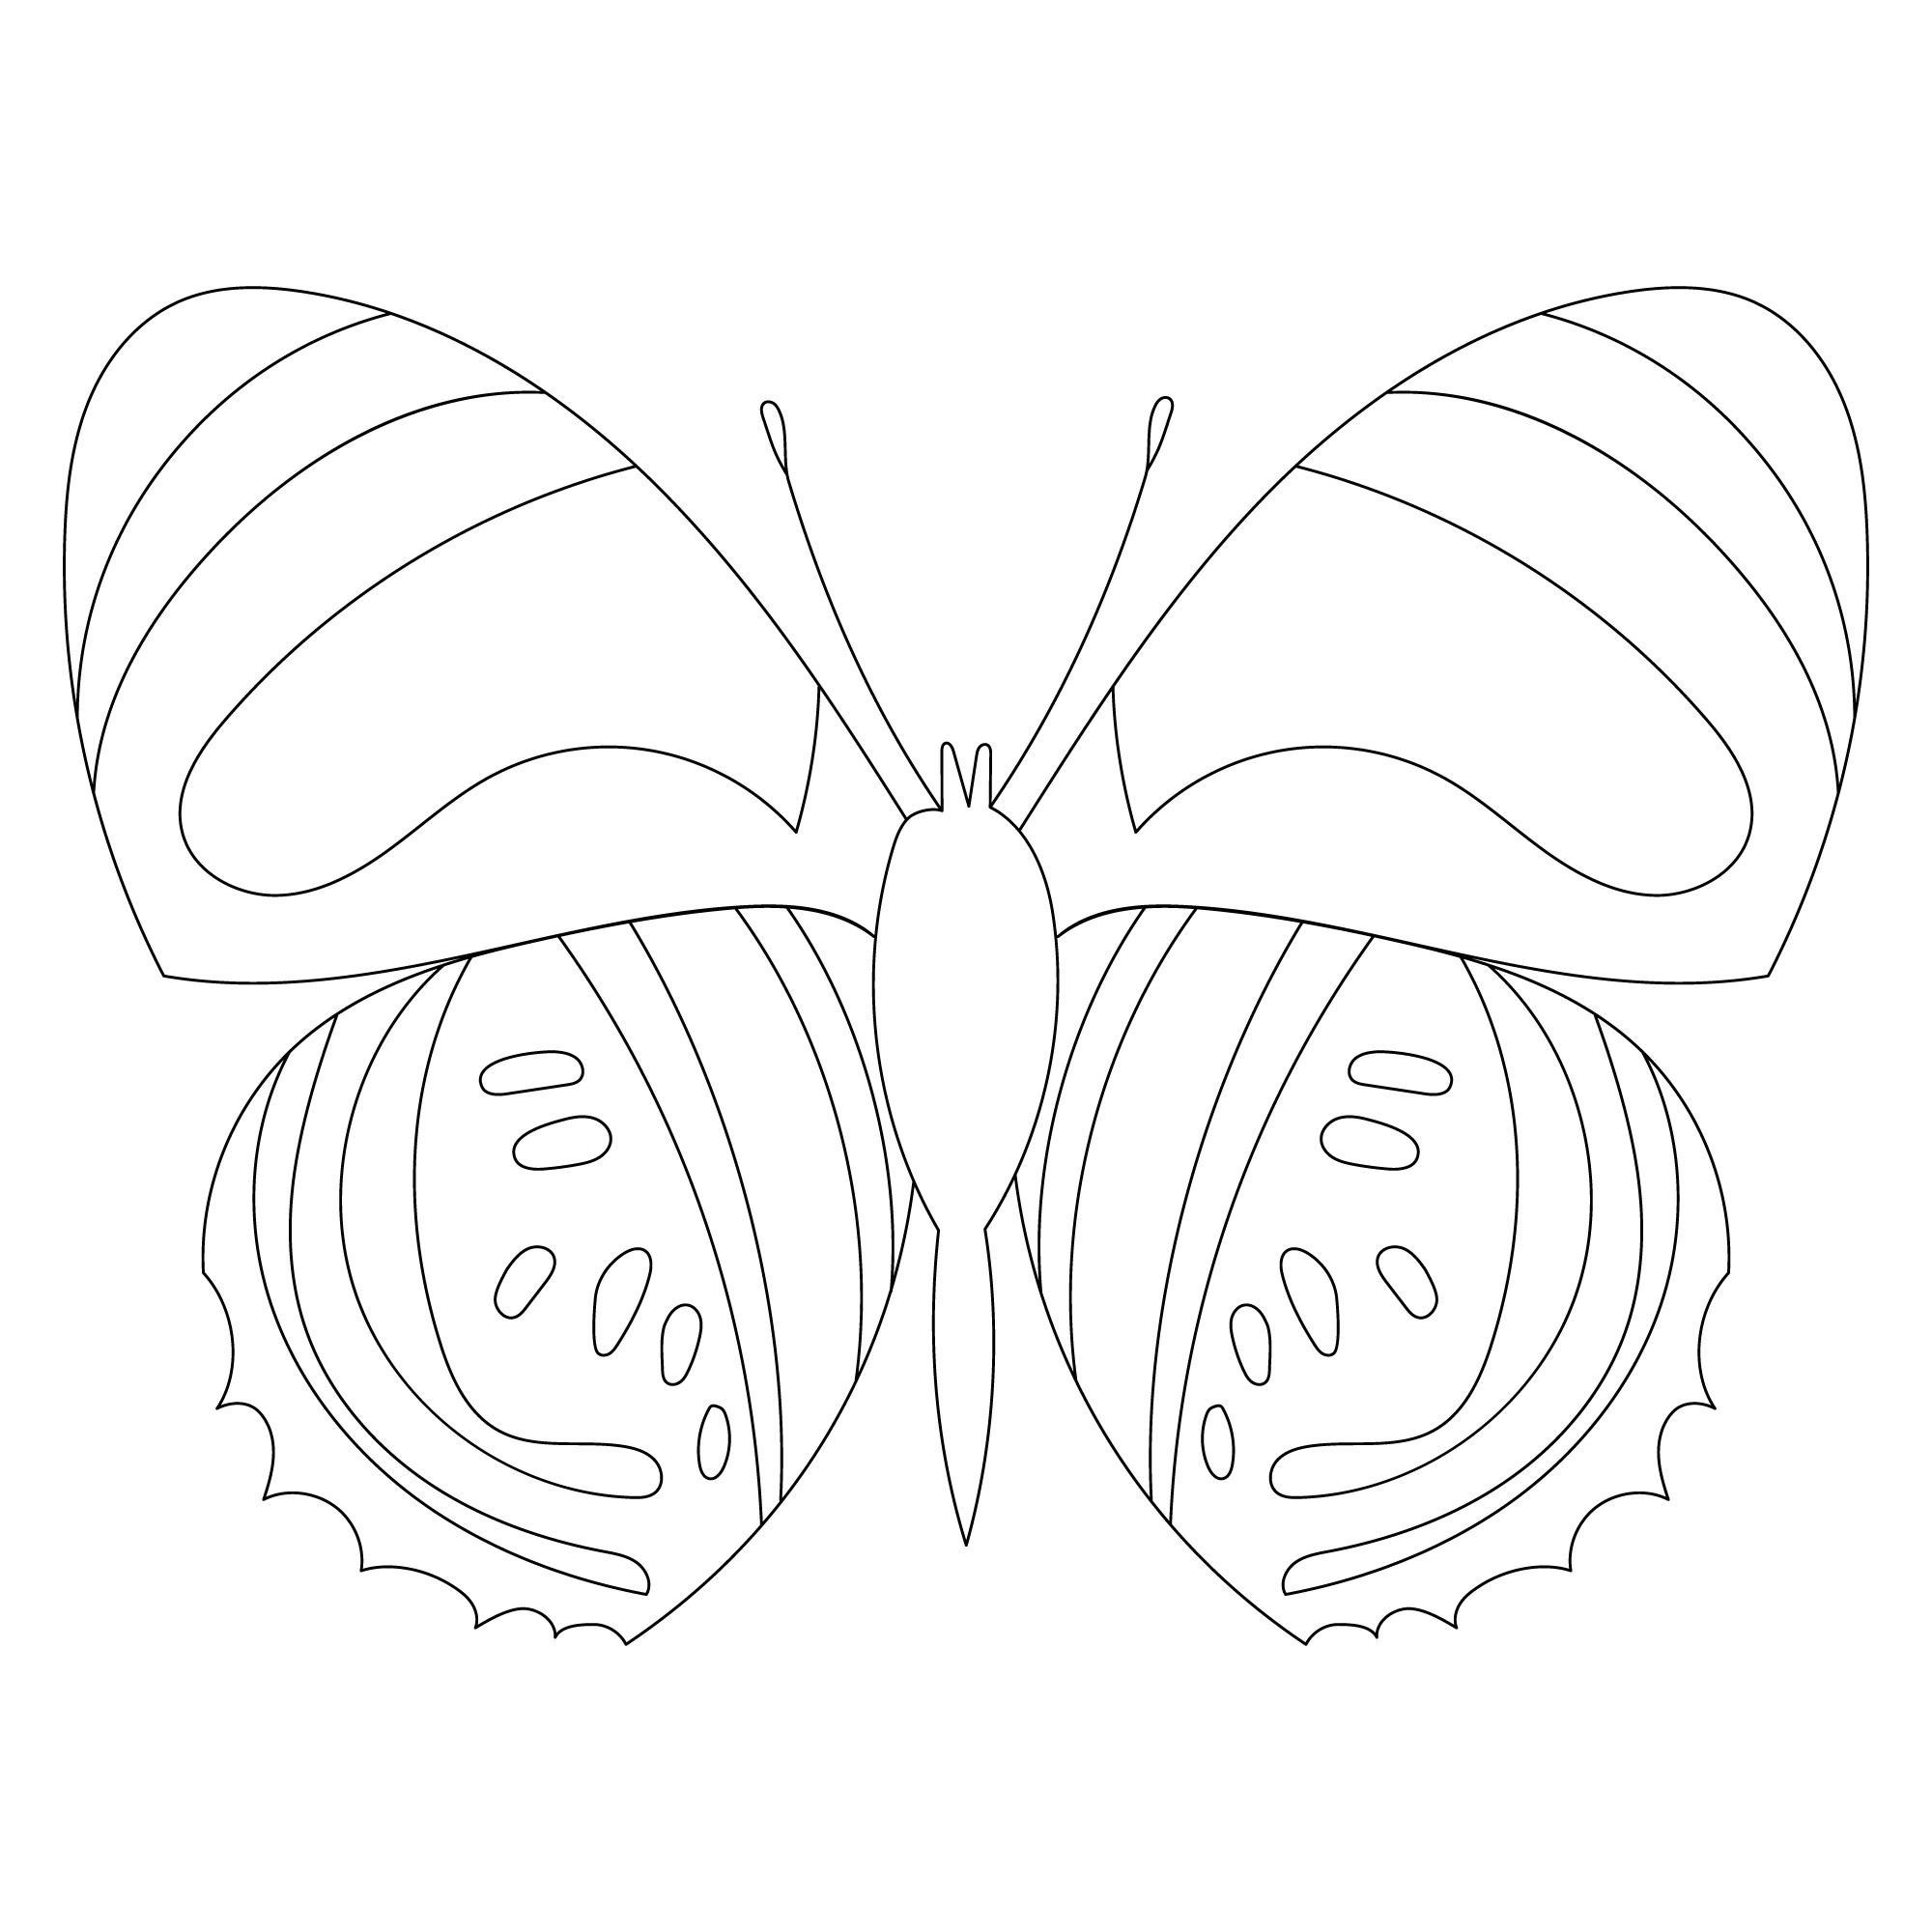 Раскраска для детей: бабочка с полосками на крыльях